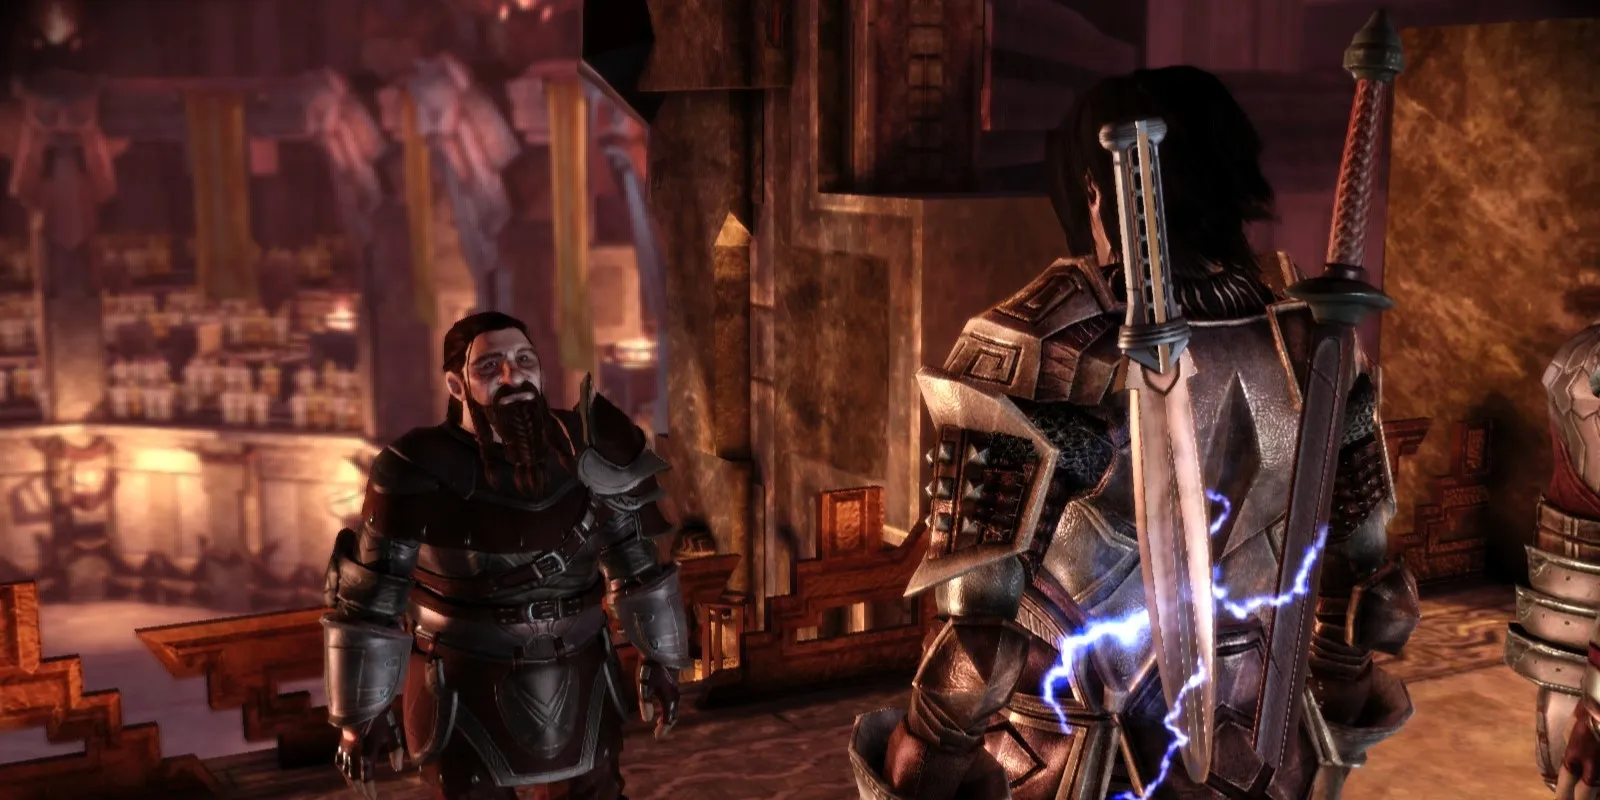 Aeducan и Gorim в истории о происхождении дворфа в игре Dragon Age: Origins